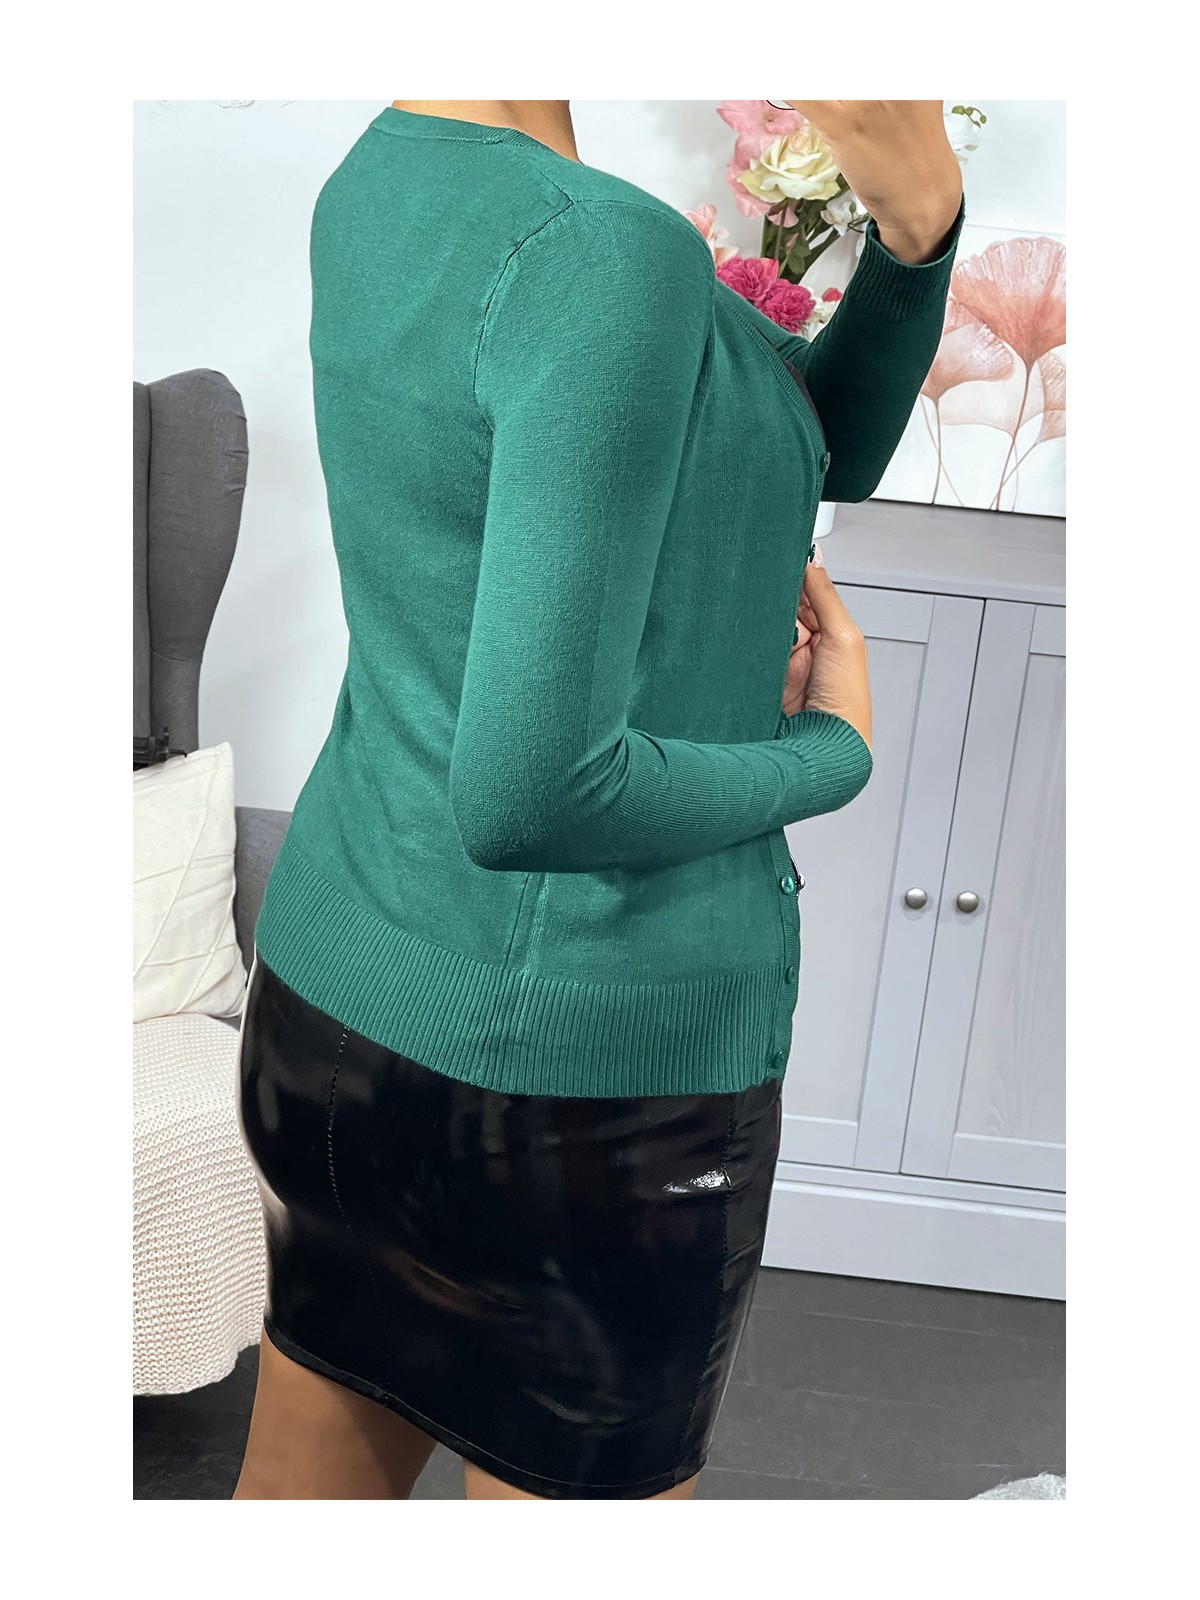 GiGGt vert en maille tricot très extensible et très doux - 8